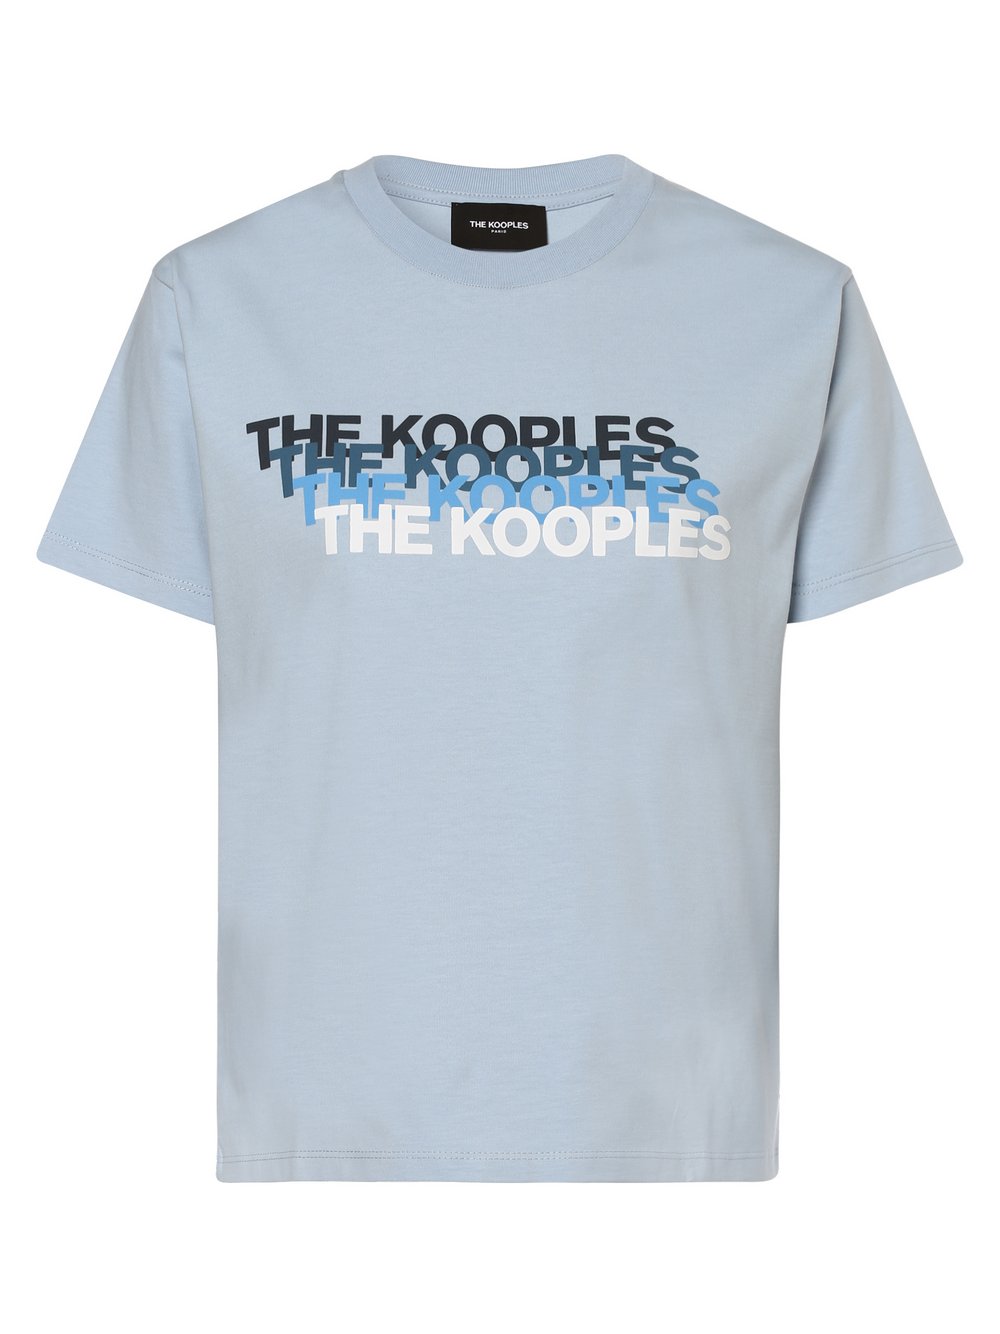 The Kooples - T-shirt damski, niebieski